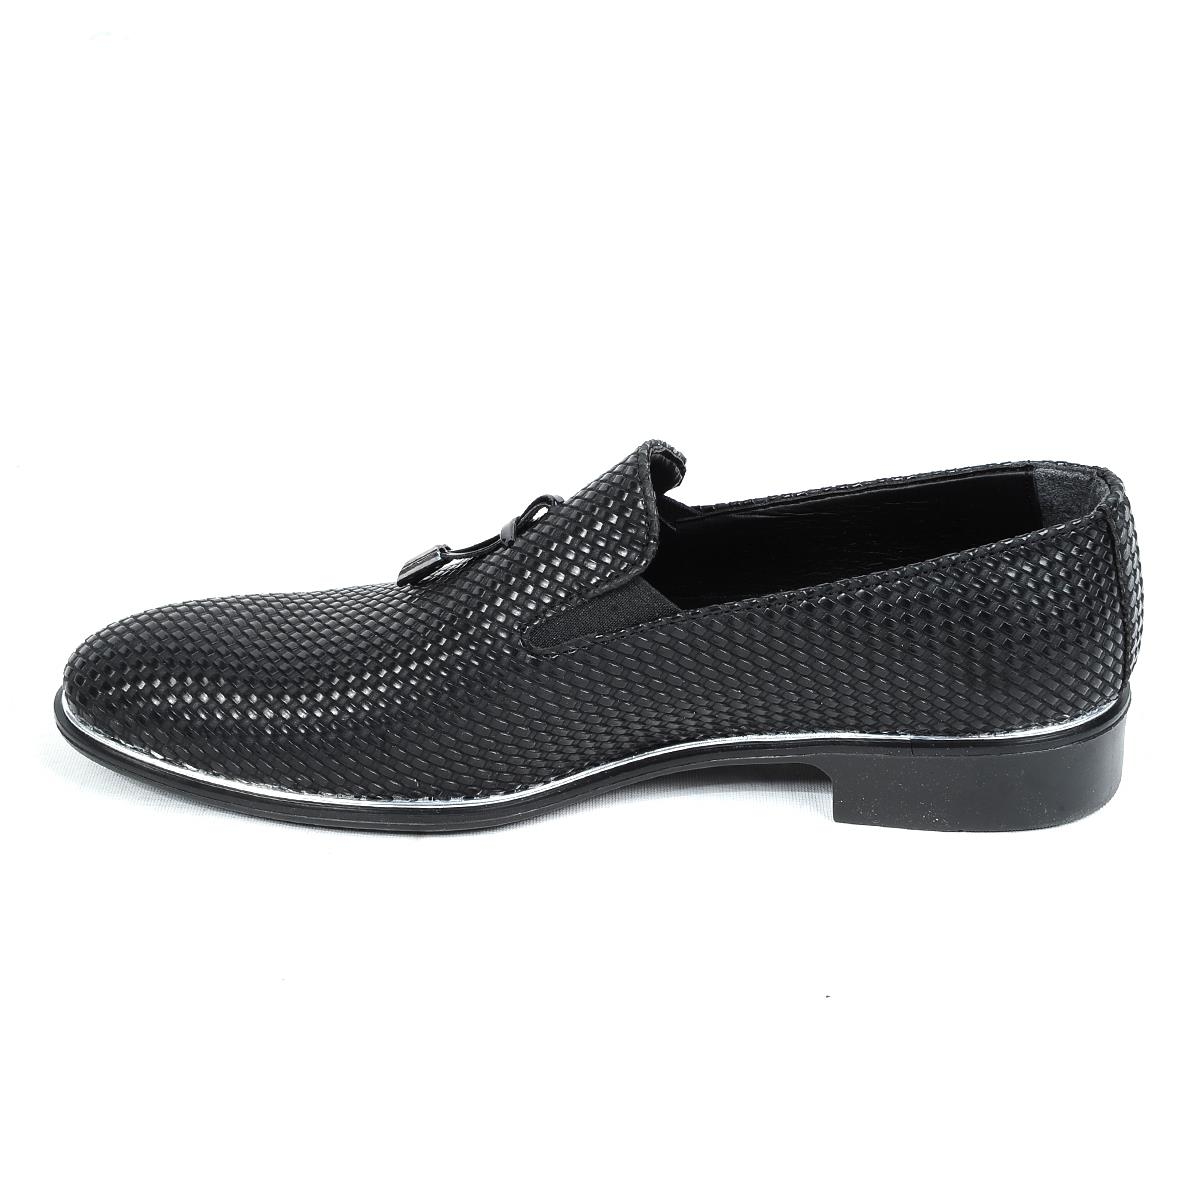 Flo 21-41 Siyah Cilt Erkek Klasik Ayakkabı. 2